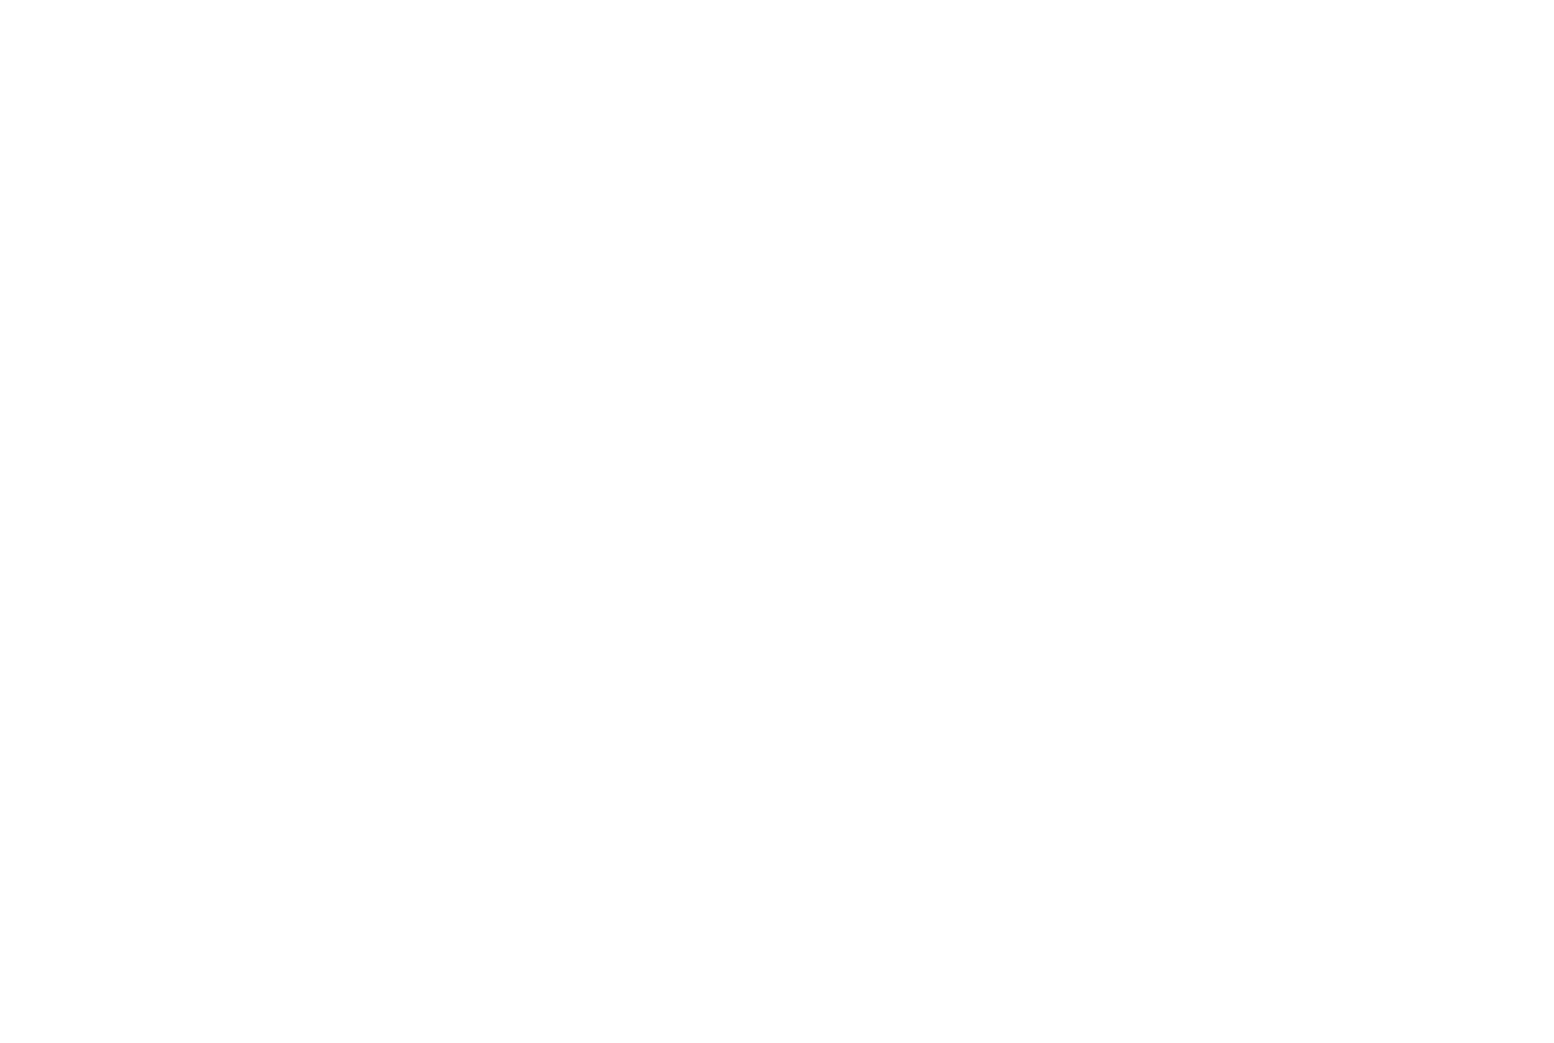 Information Services Group logo grand pour les fonds sombres (PNG transparent)